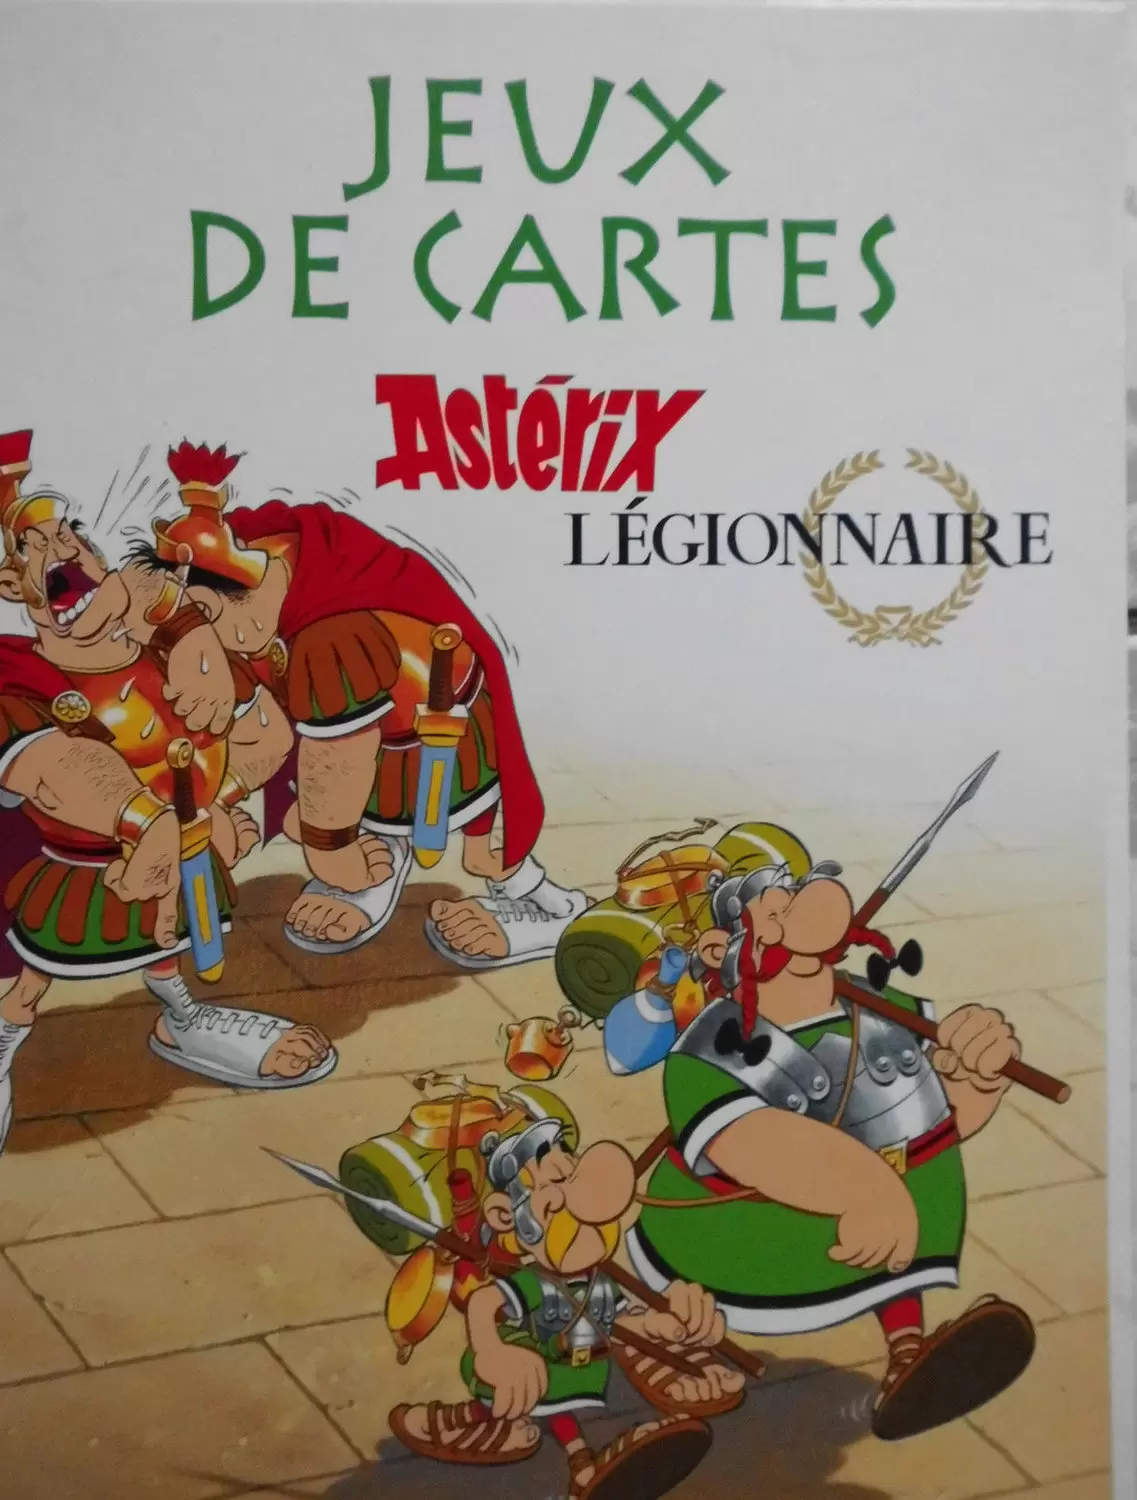 Edition Atlas - Boîtes de Jeux Astérix - Jeux de cartes - Astérix Légionnaire